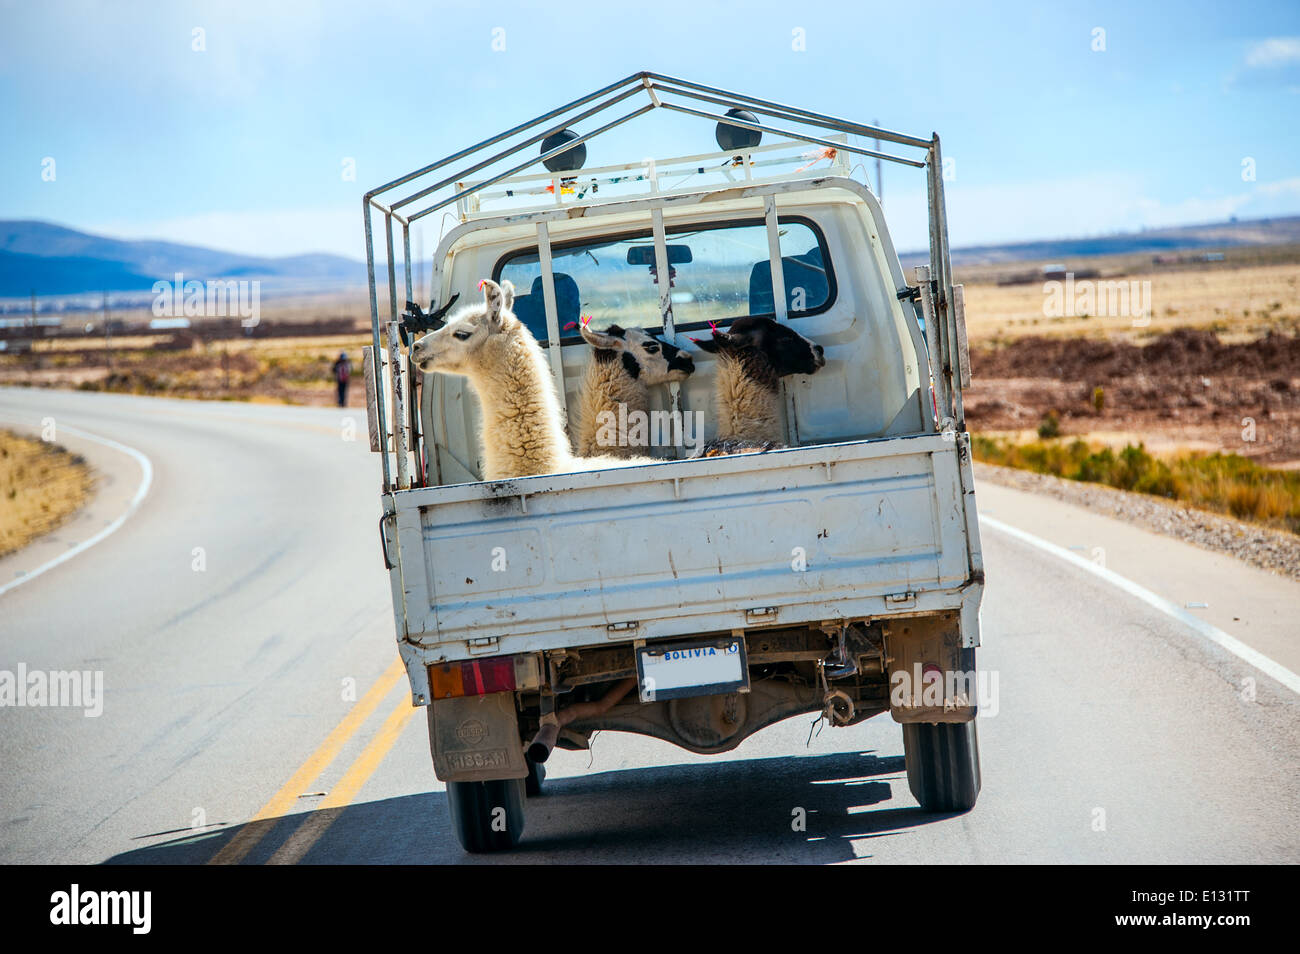 Trois lamas avec étiquettes d'oreille traditionnelle balade en chariot. Route de La Paz, Bolivie, Amérique du Sud Banque D'Images